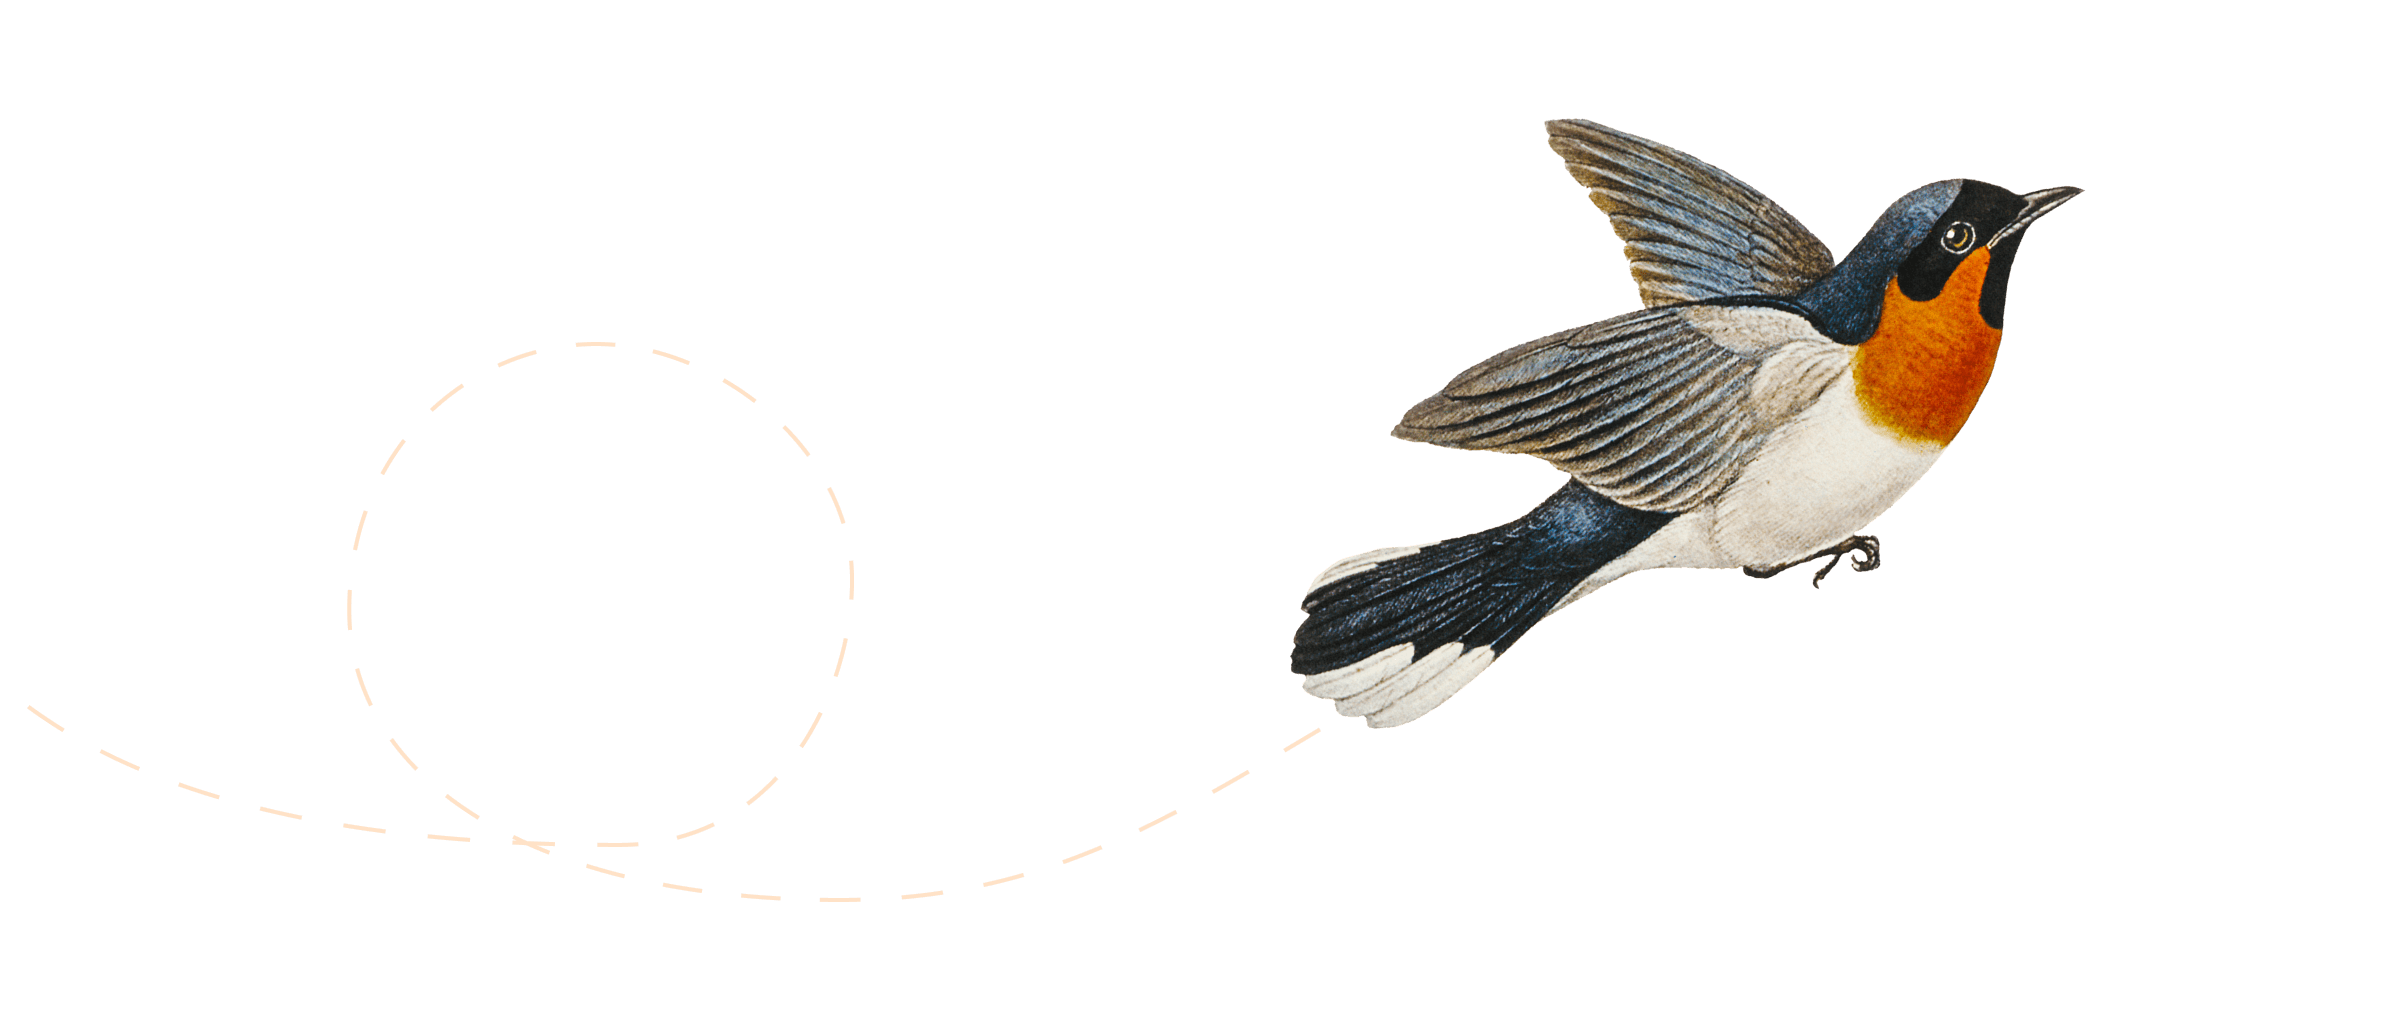 Illustration af en fugl, der flyver.